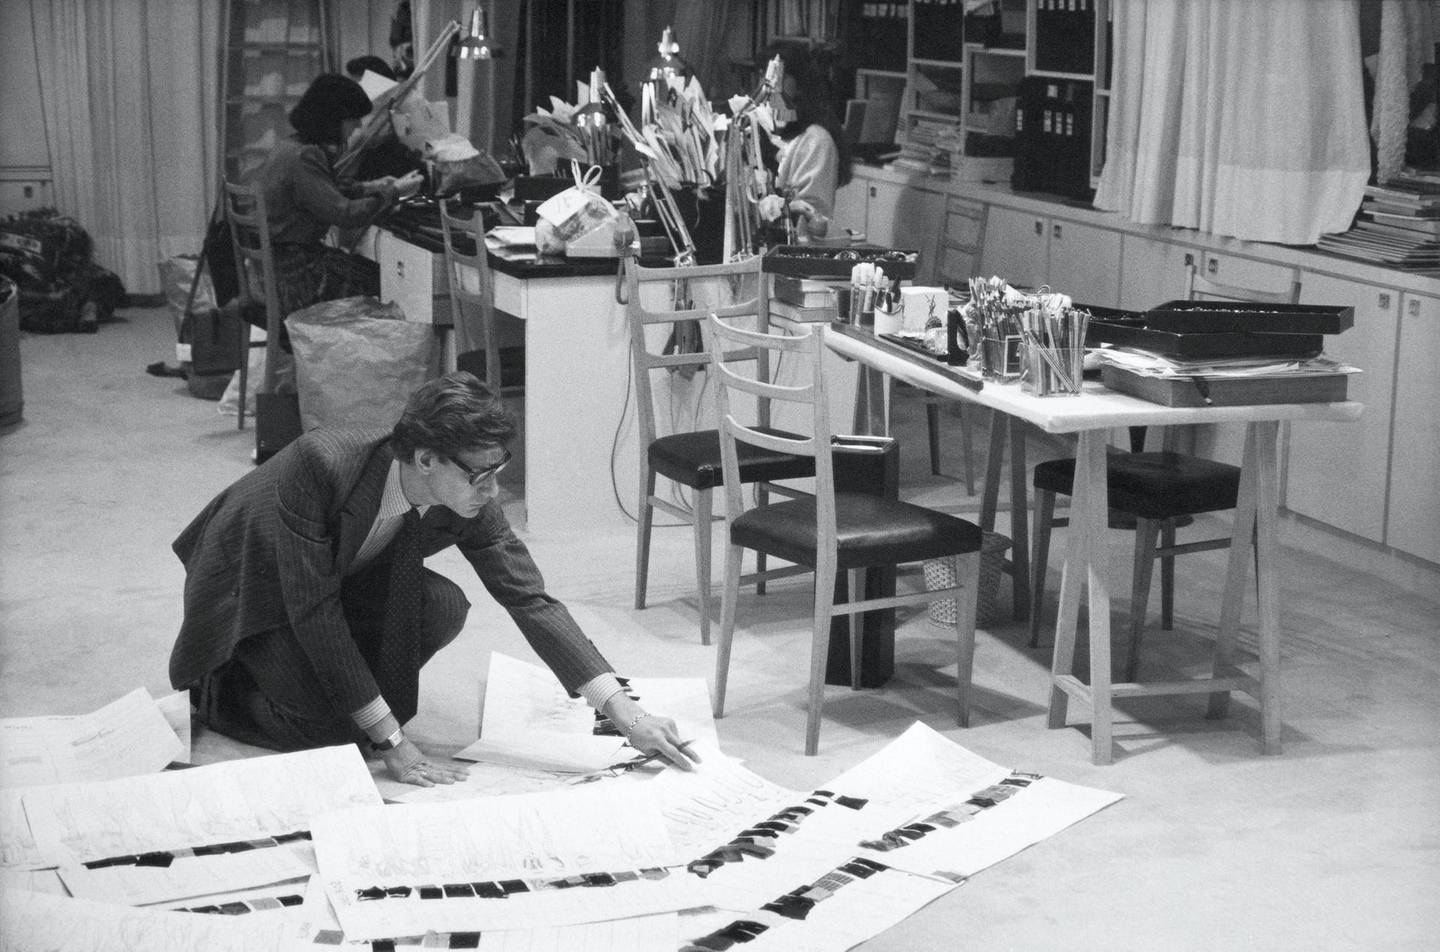 Yves Saint Laurent in his studio at Avenue Marceau, Paris, now the site of the museum Musée Yves Saint Laurent Paris. Courtesy Musée Yves Saint Laurent Paris